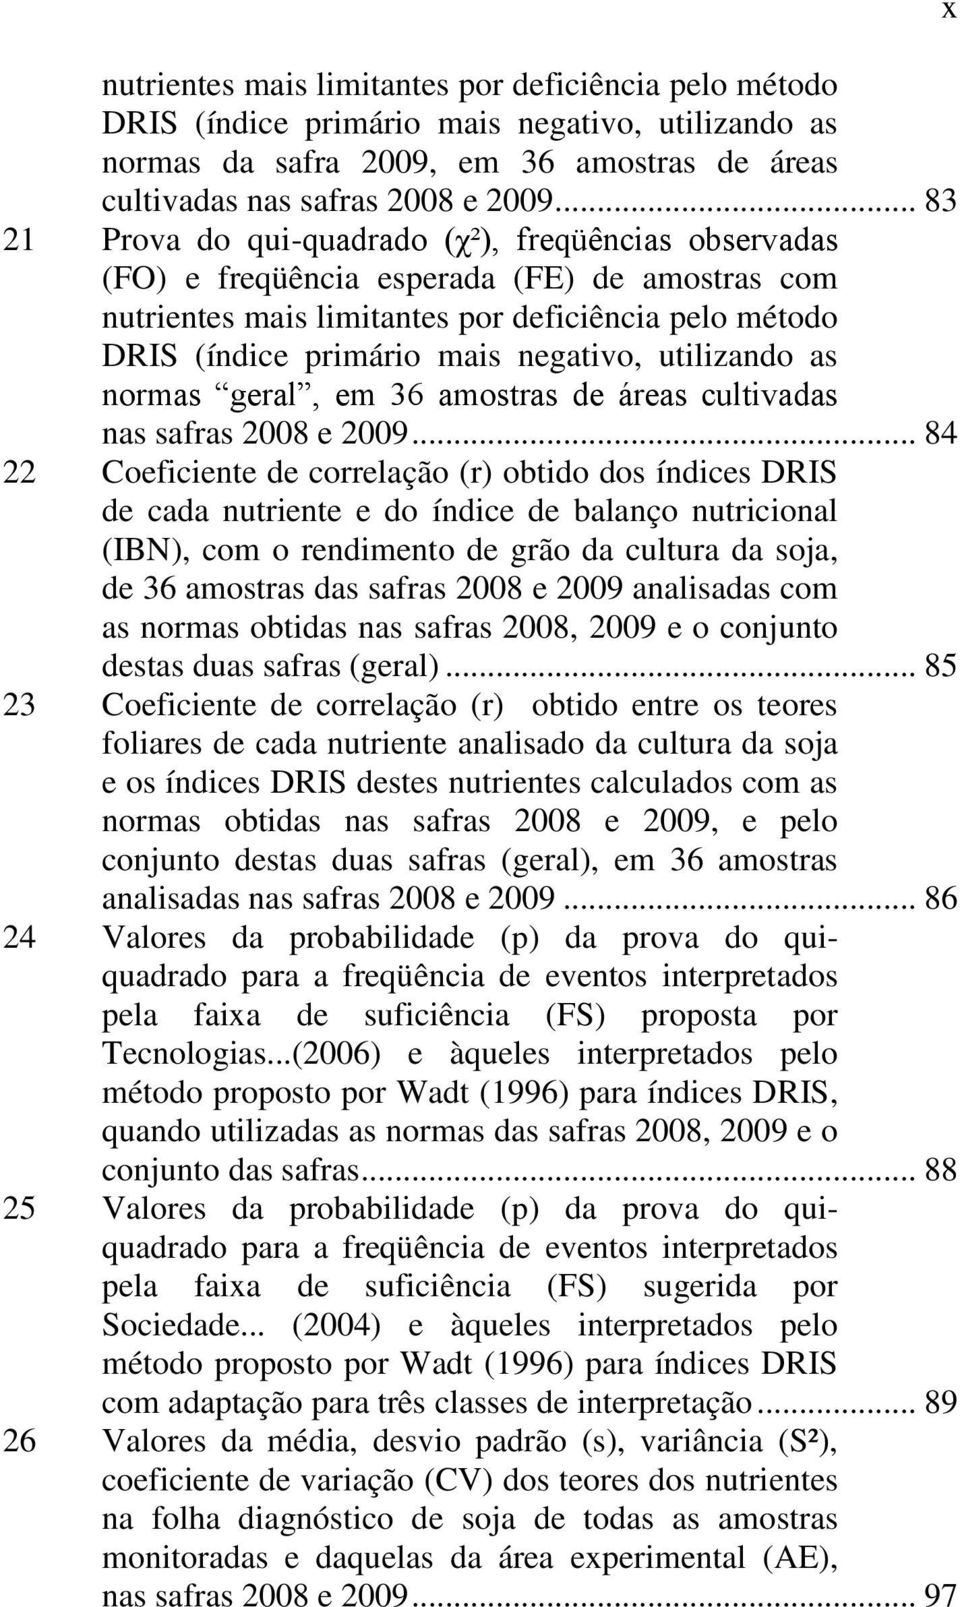 utilizando as normas geral, em 36 amostras de áreas cultivadas nas safras 2008 e 2009.